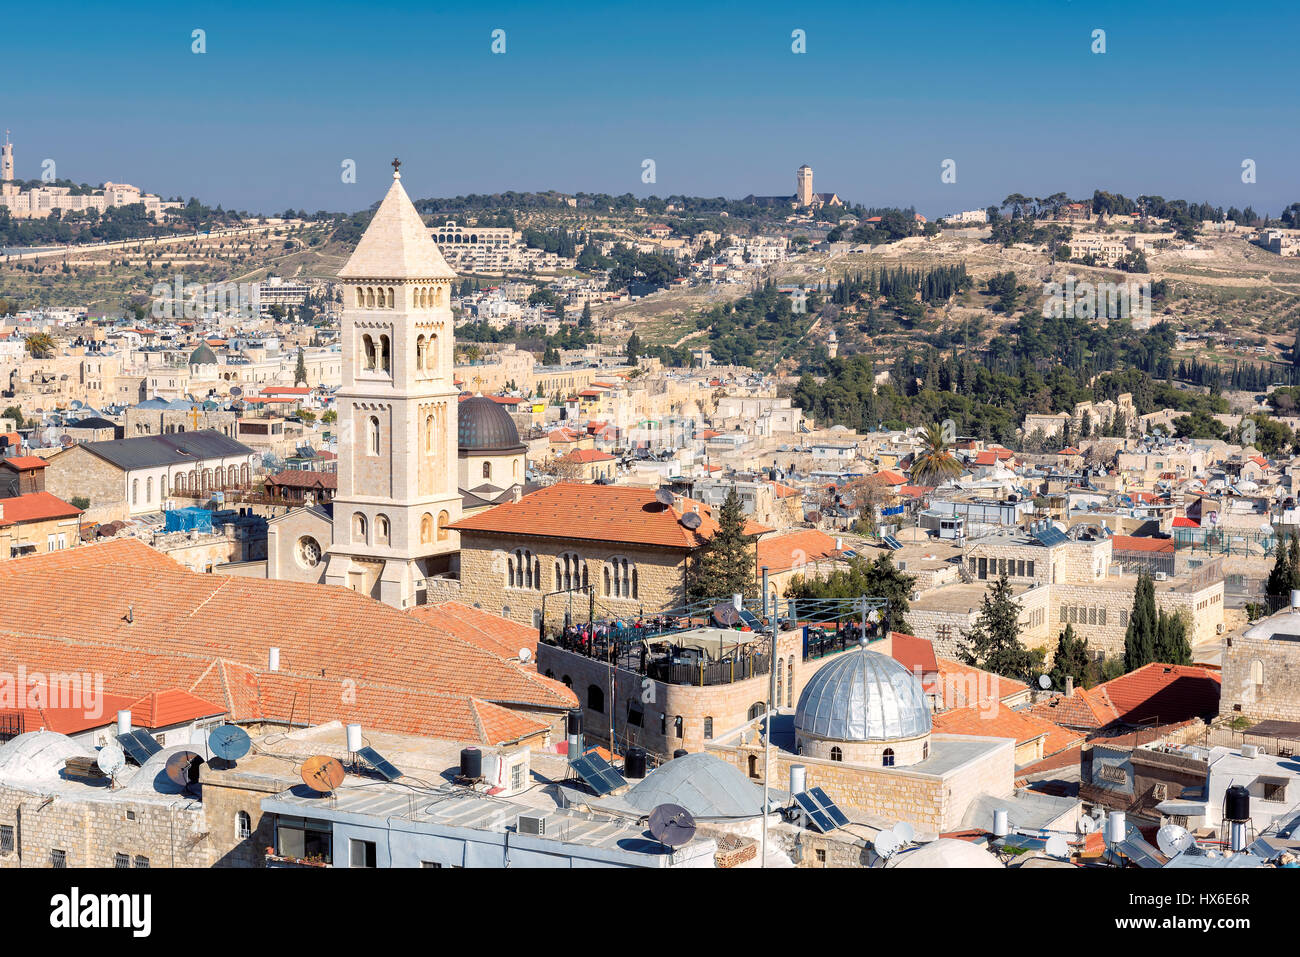 Vista aérea de la ciudad vieja de Jerusalén, Israel. Foto de stock